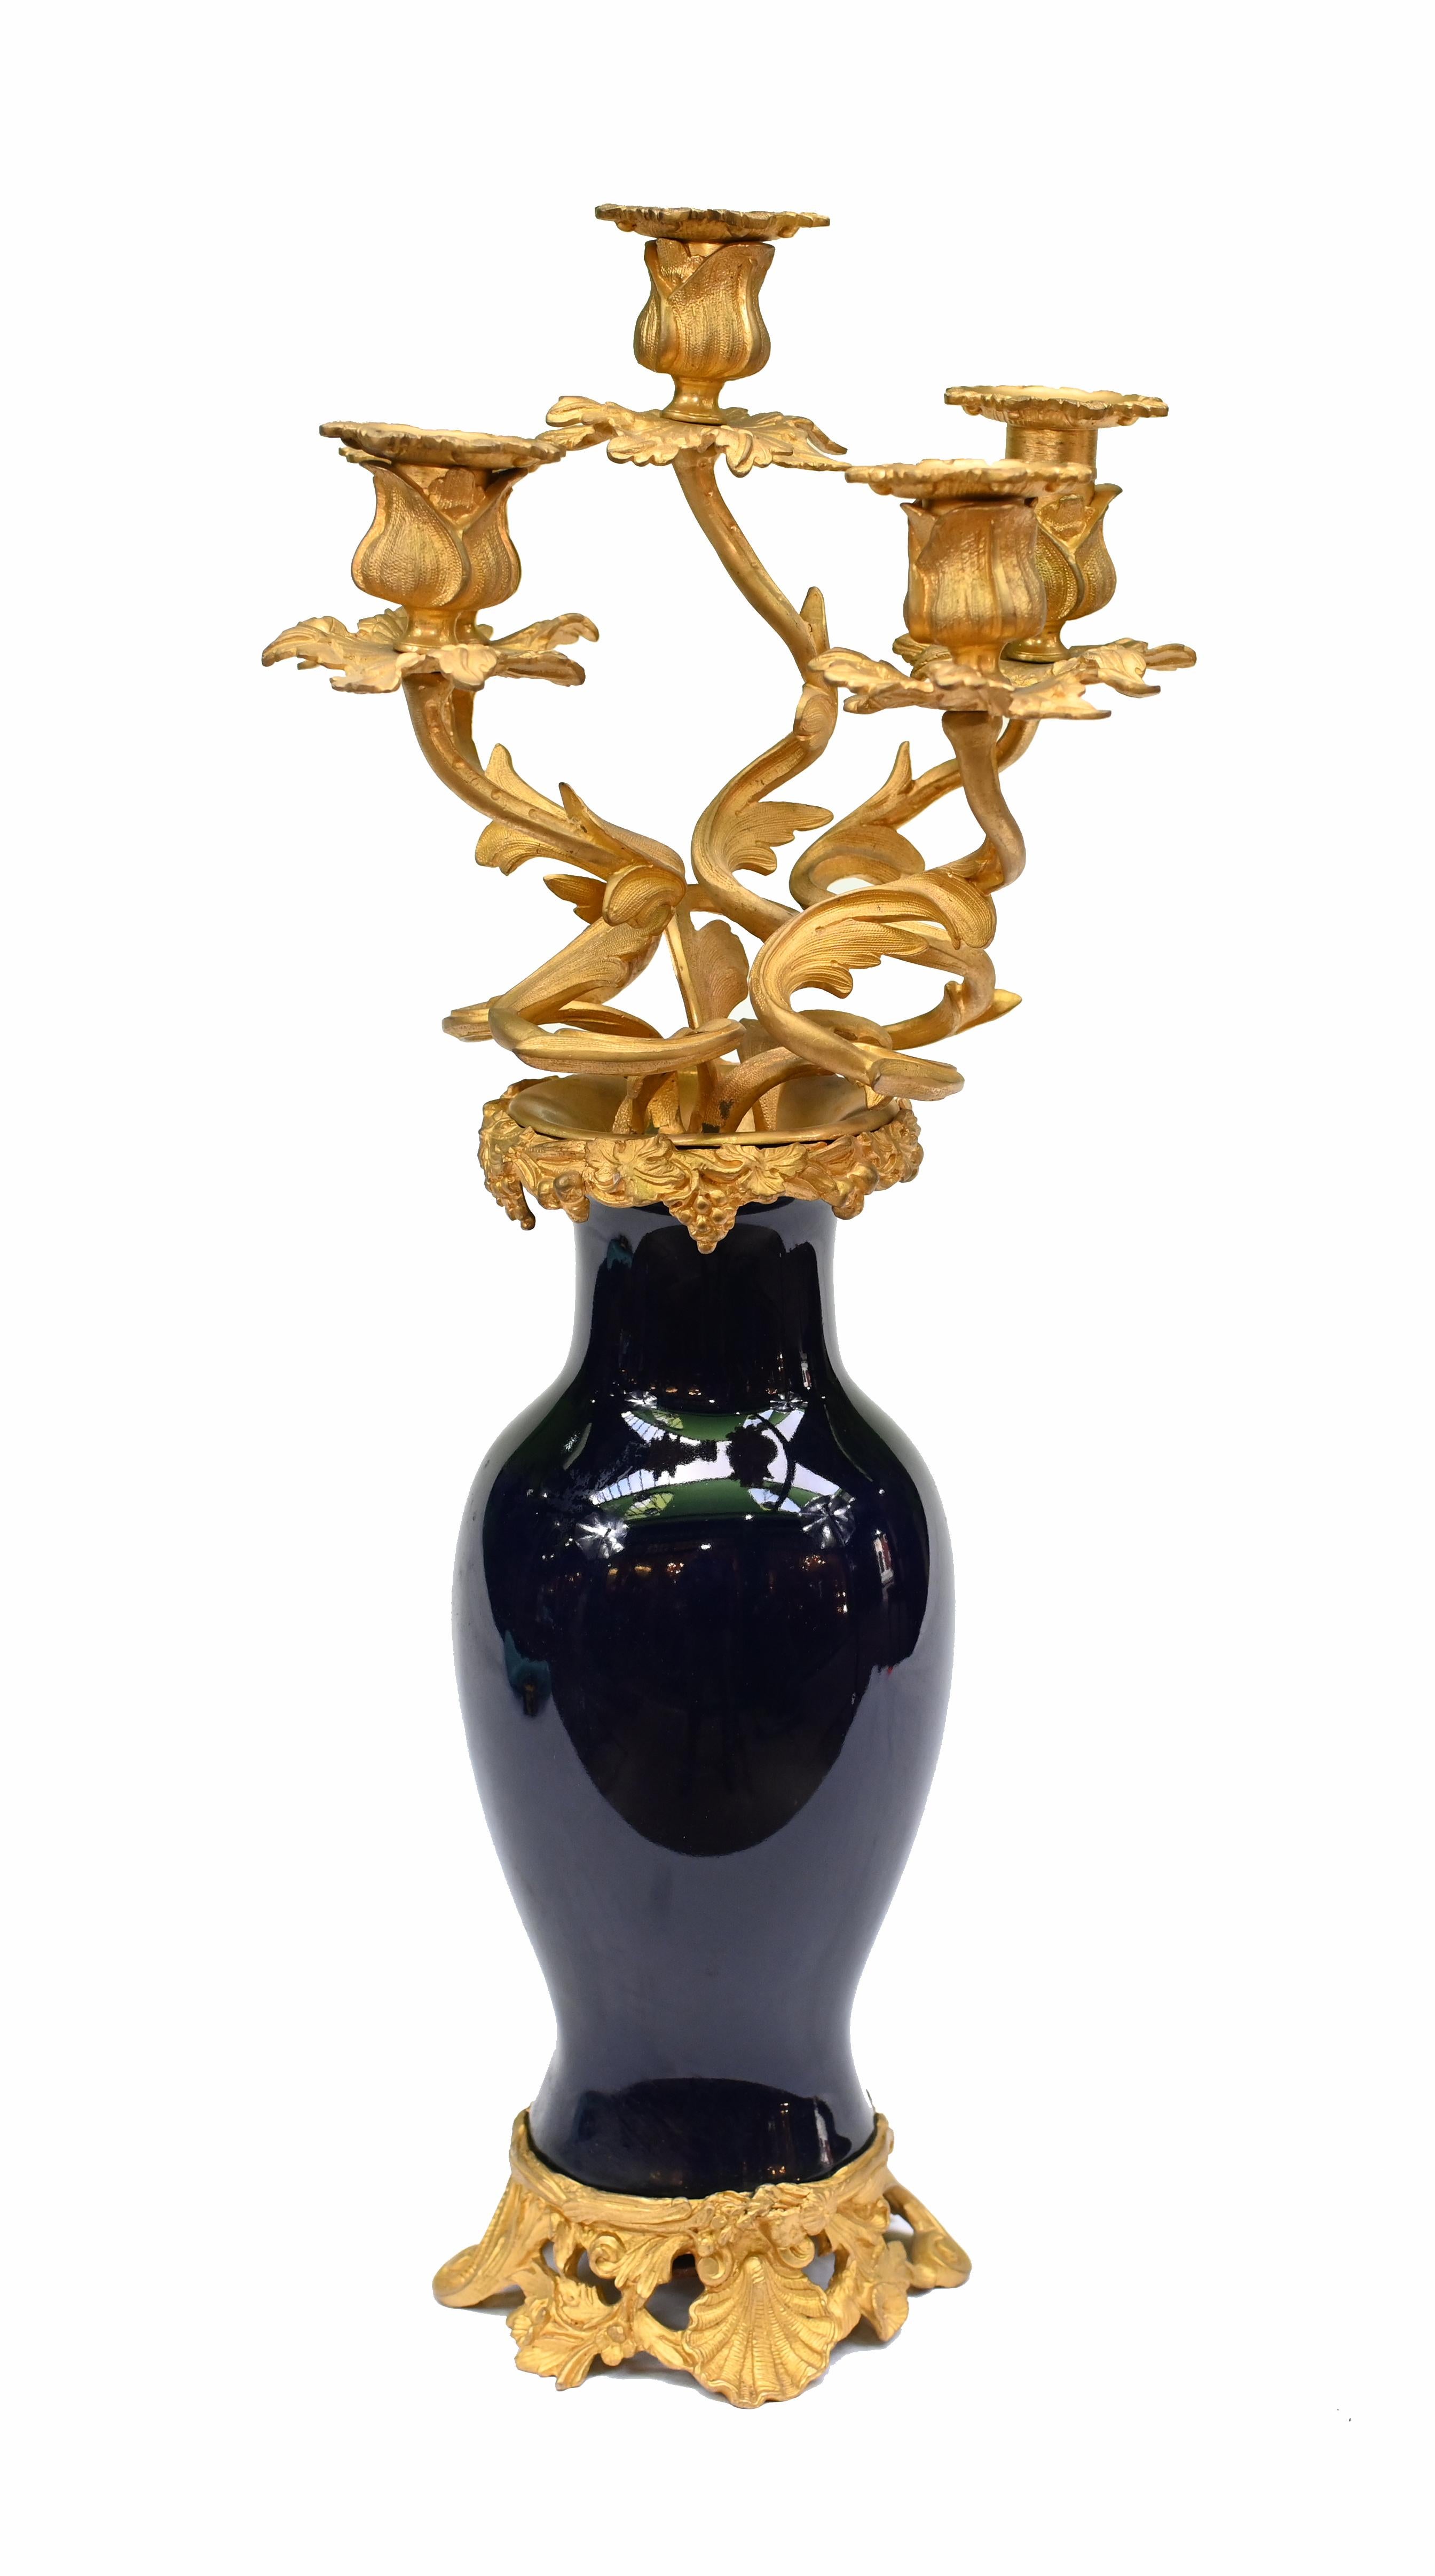 Paire de candélabres anciens en bronze doré montés sur des vases en porcelaine de cobalt.
Bonne taille avec presque deux pieds de haut - 50 CM
Très belle fonte de bronze doré avec des détails complexes d'aspect rococo.
Nous l'avons acheté à un